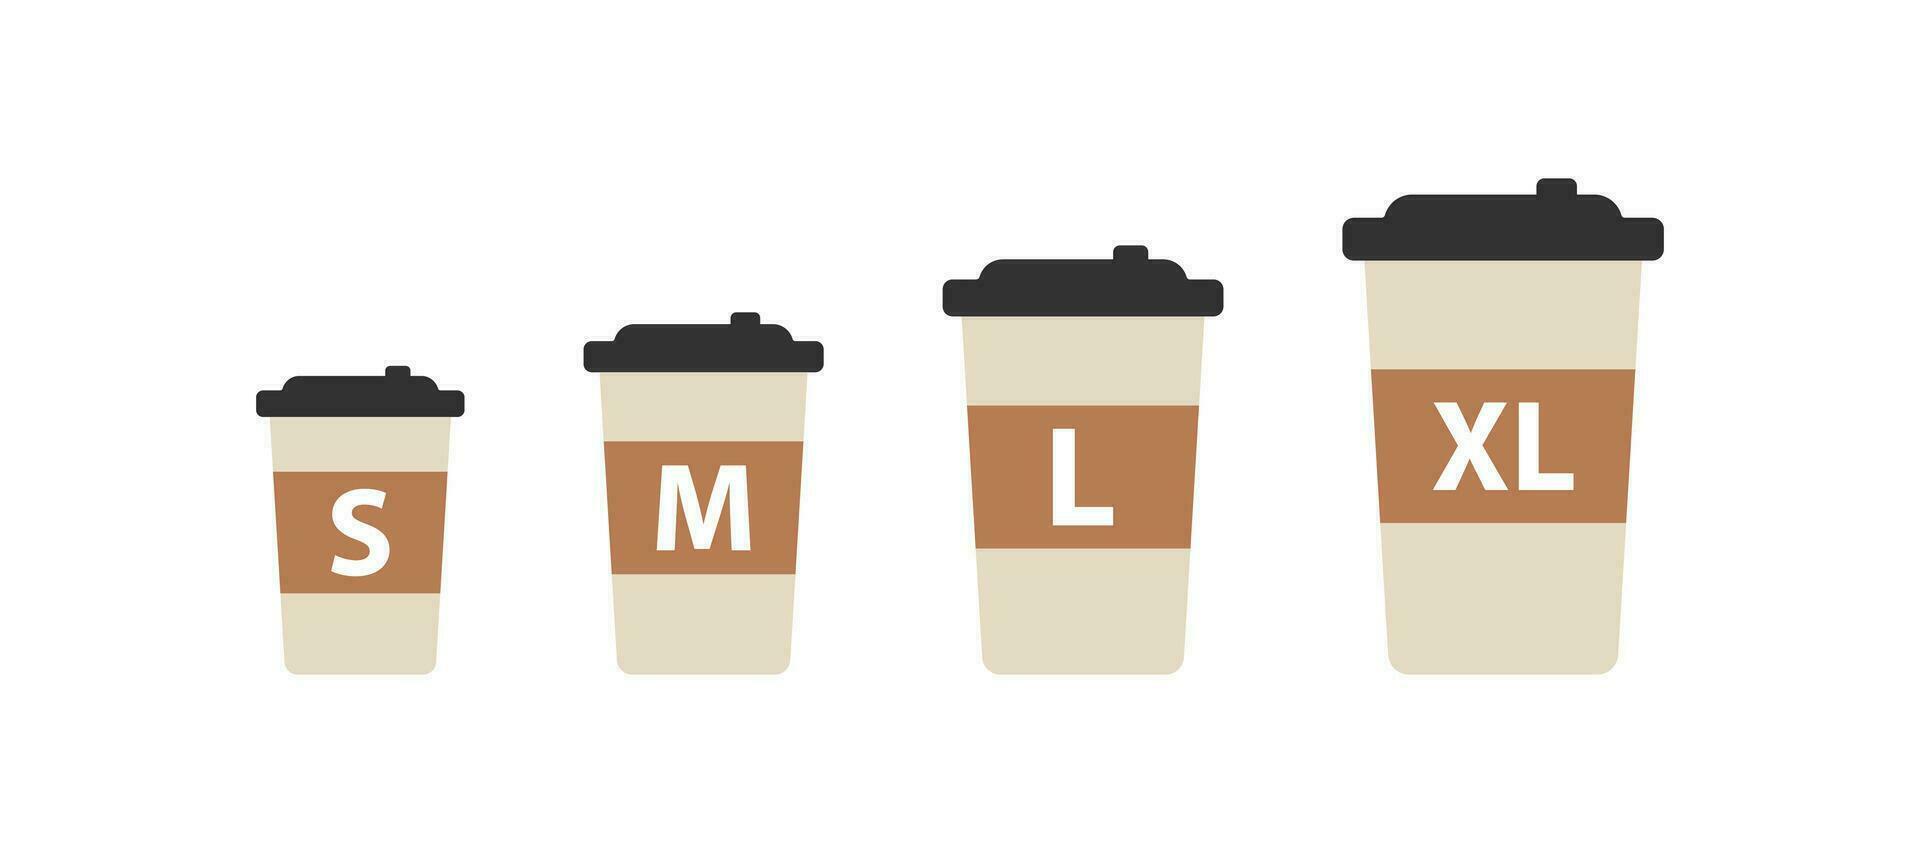 Papier Kaffee Tasse Größe Symbol. klein, Mittel und groß nehmen Weg trinken einstellen unterzeichnen. heiß Tee Getränk. Vektor Illustration.